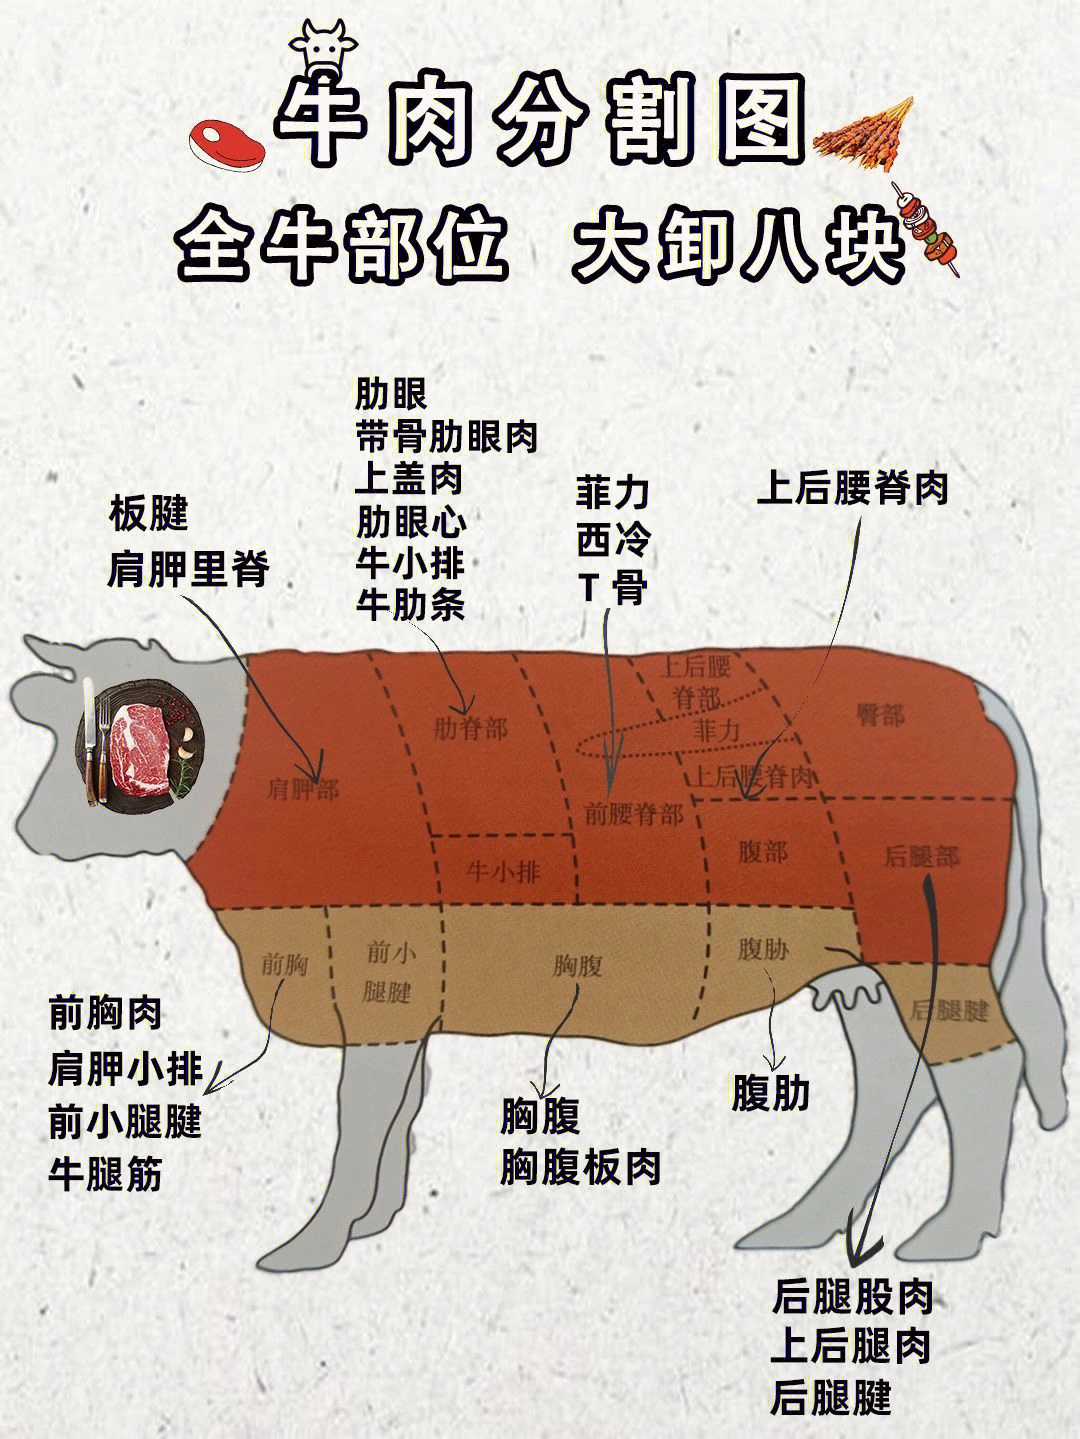 牛分布图身体部位图片